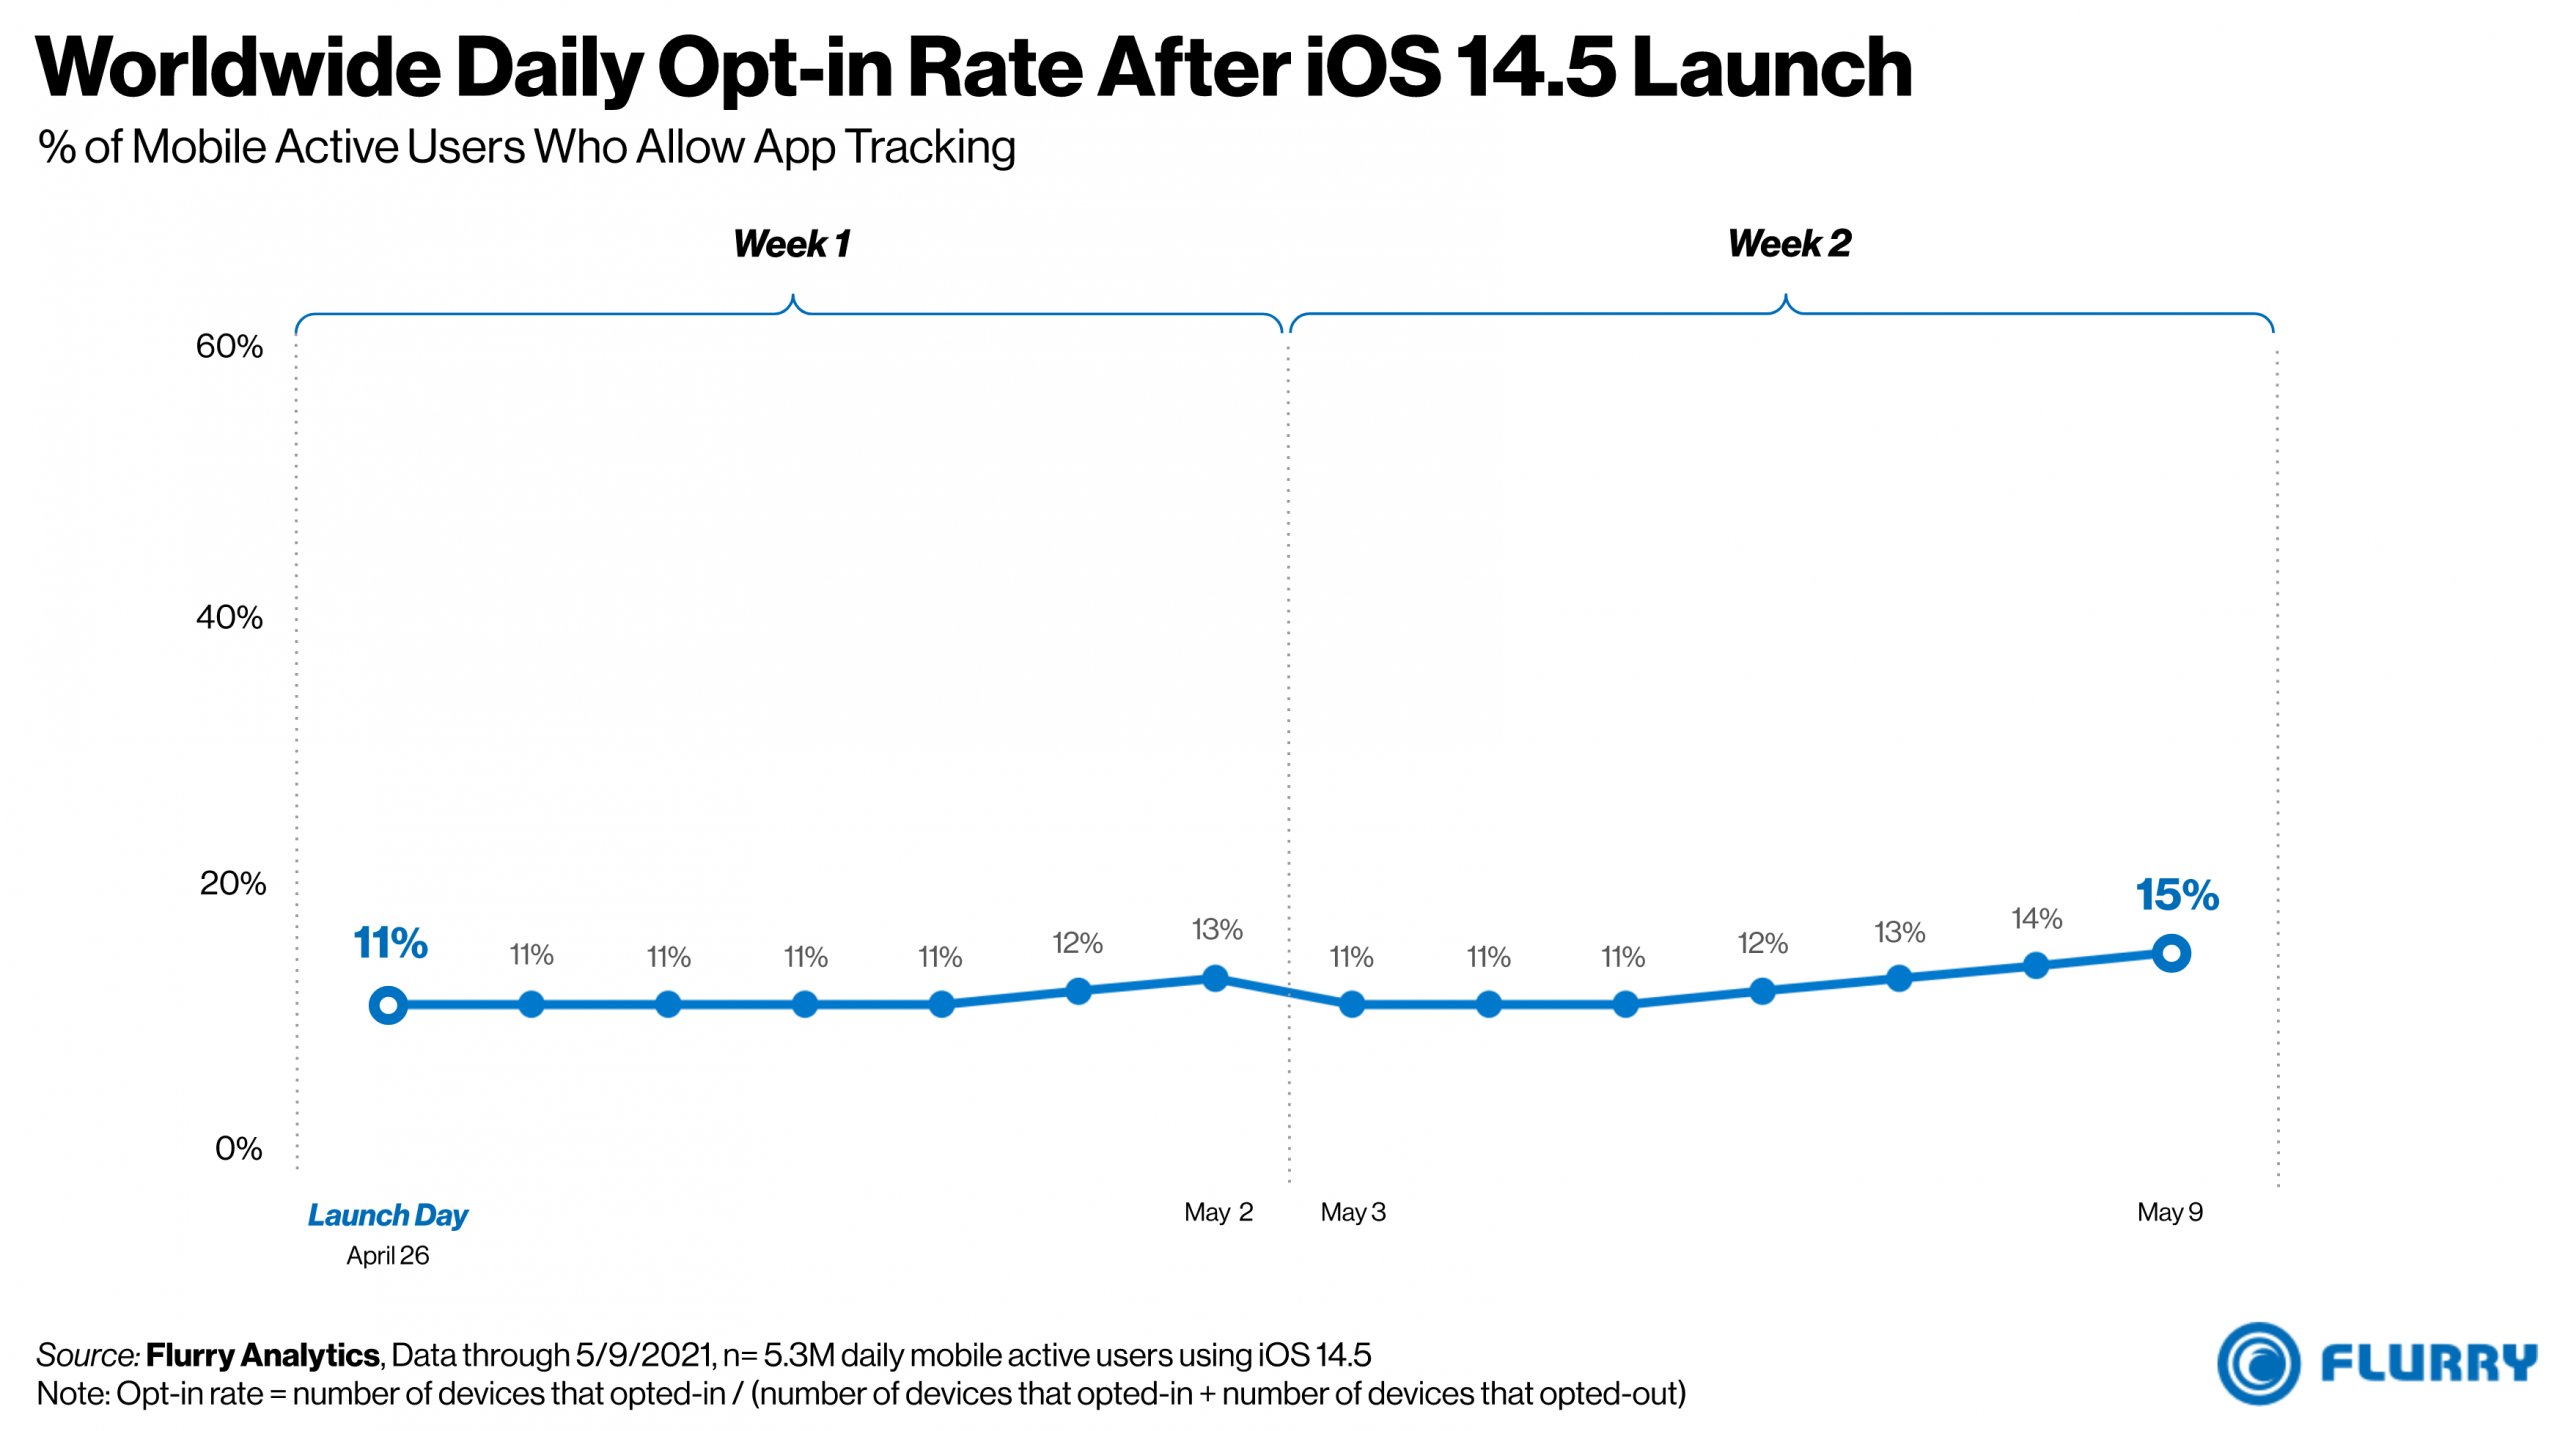 根据Flurry的数据，iOS 14.5发布后，全球每日可选价格